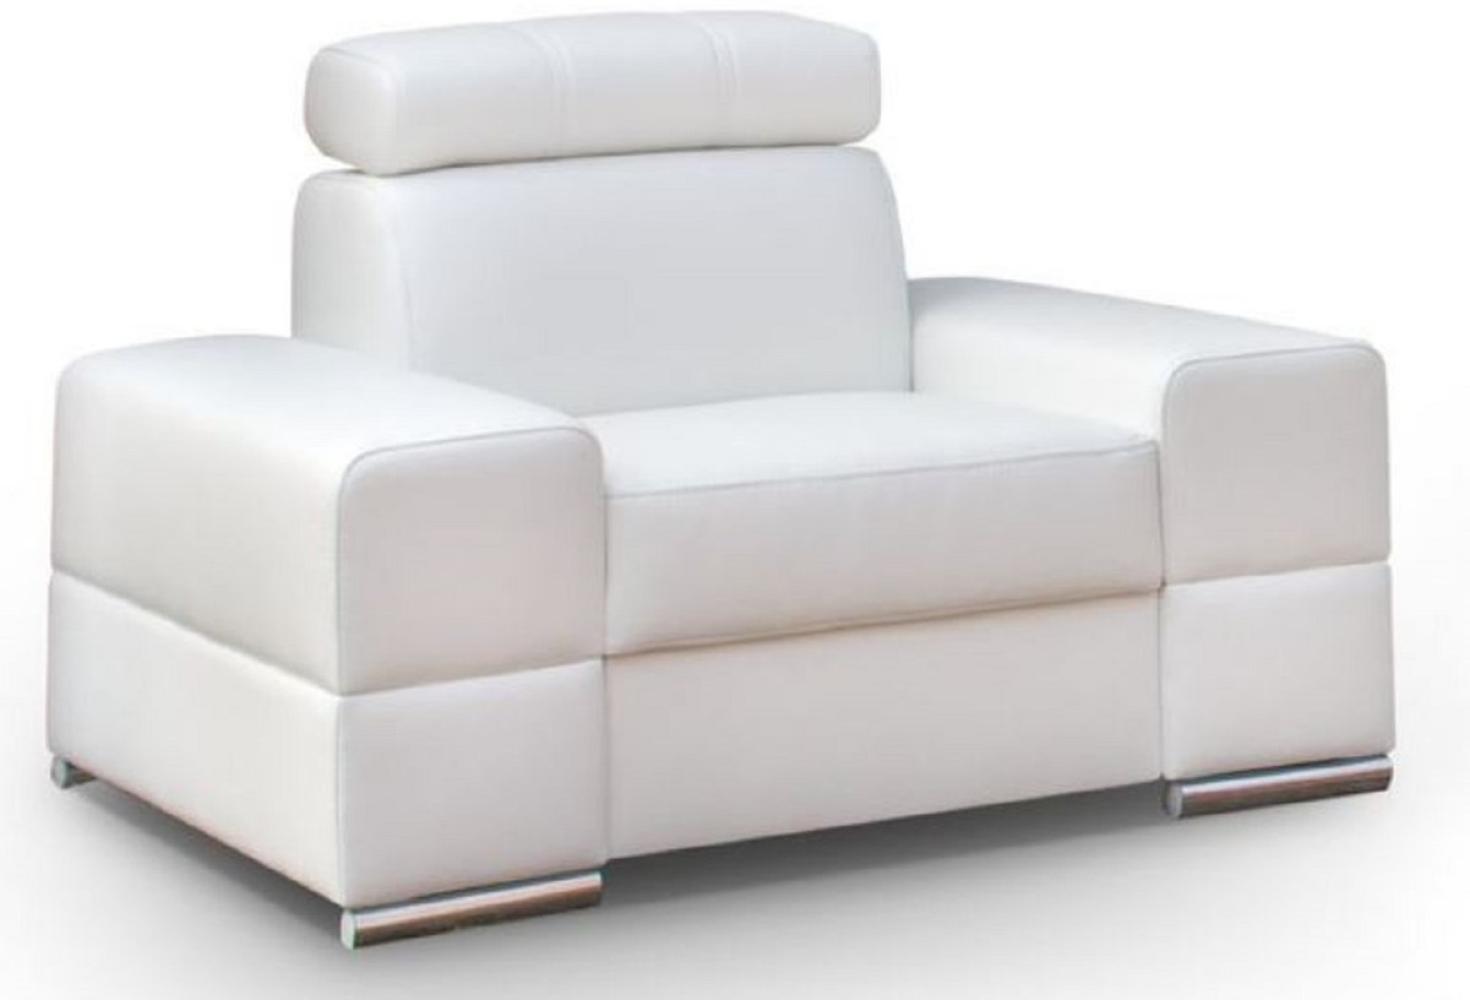 Casa Padrino Wohnzimmer Sessel Weiß / Silber 114 x 97 x H. 78-95 cm - Moderner Sessel mit verstellbarer Kopfstütze - Moderne Wohnzimmer Möbel Bild 1